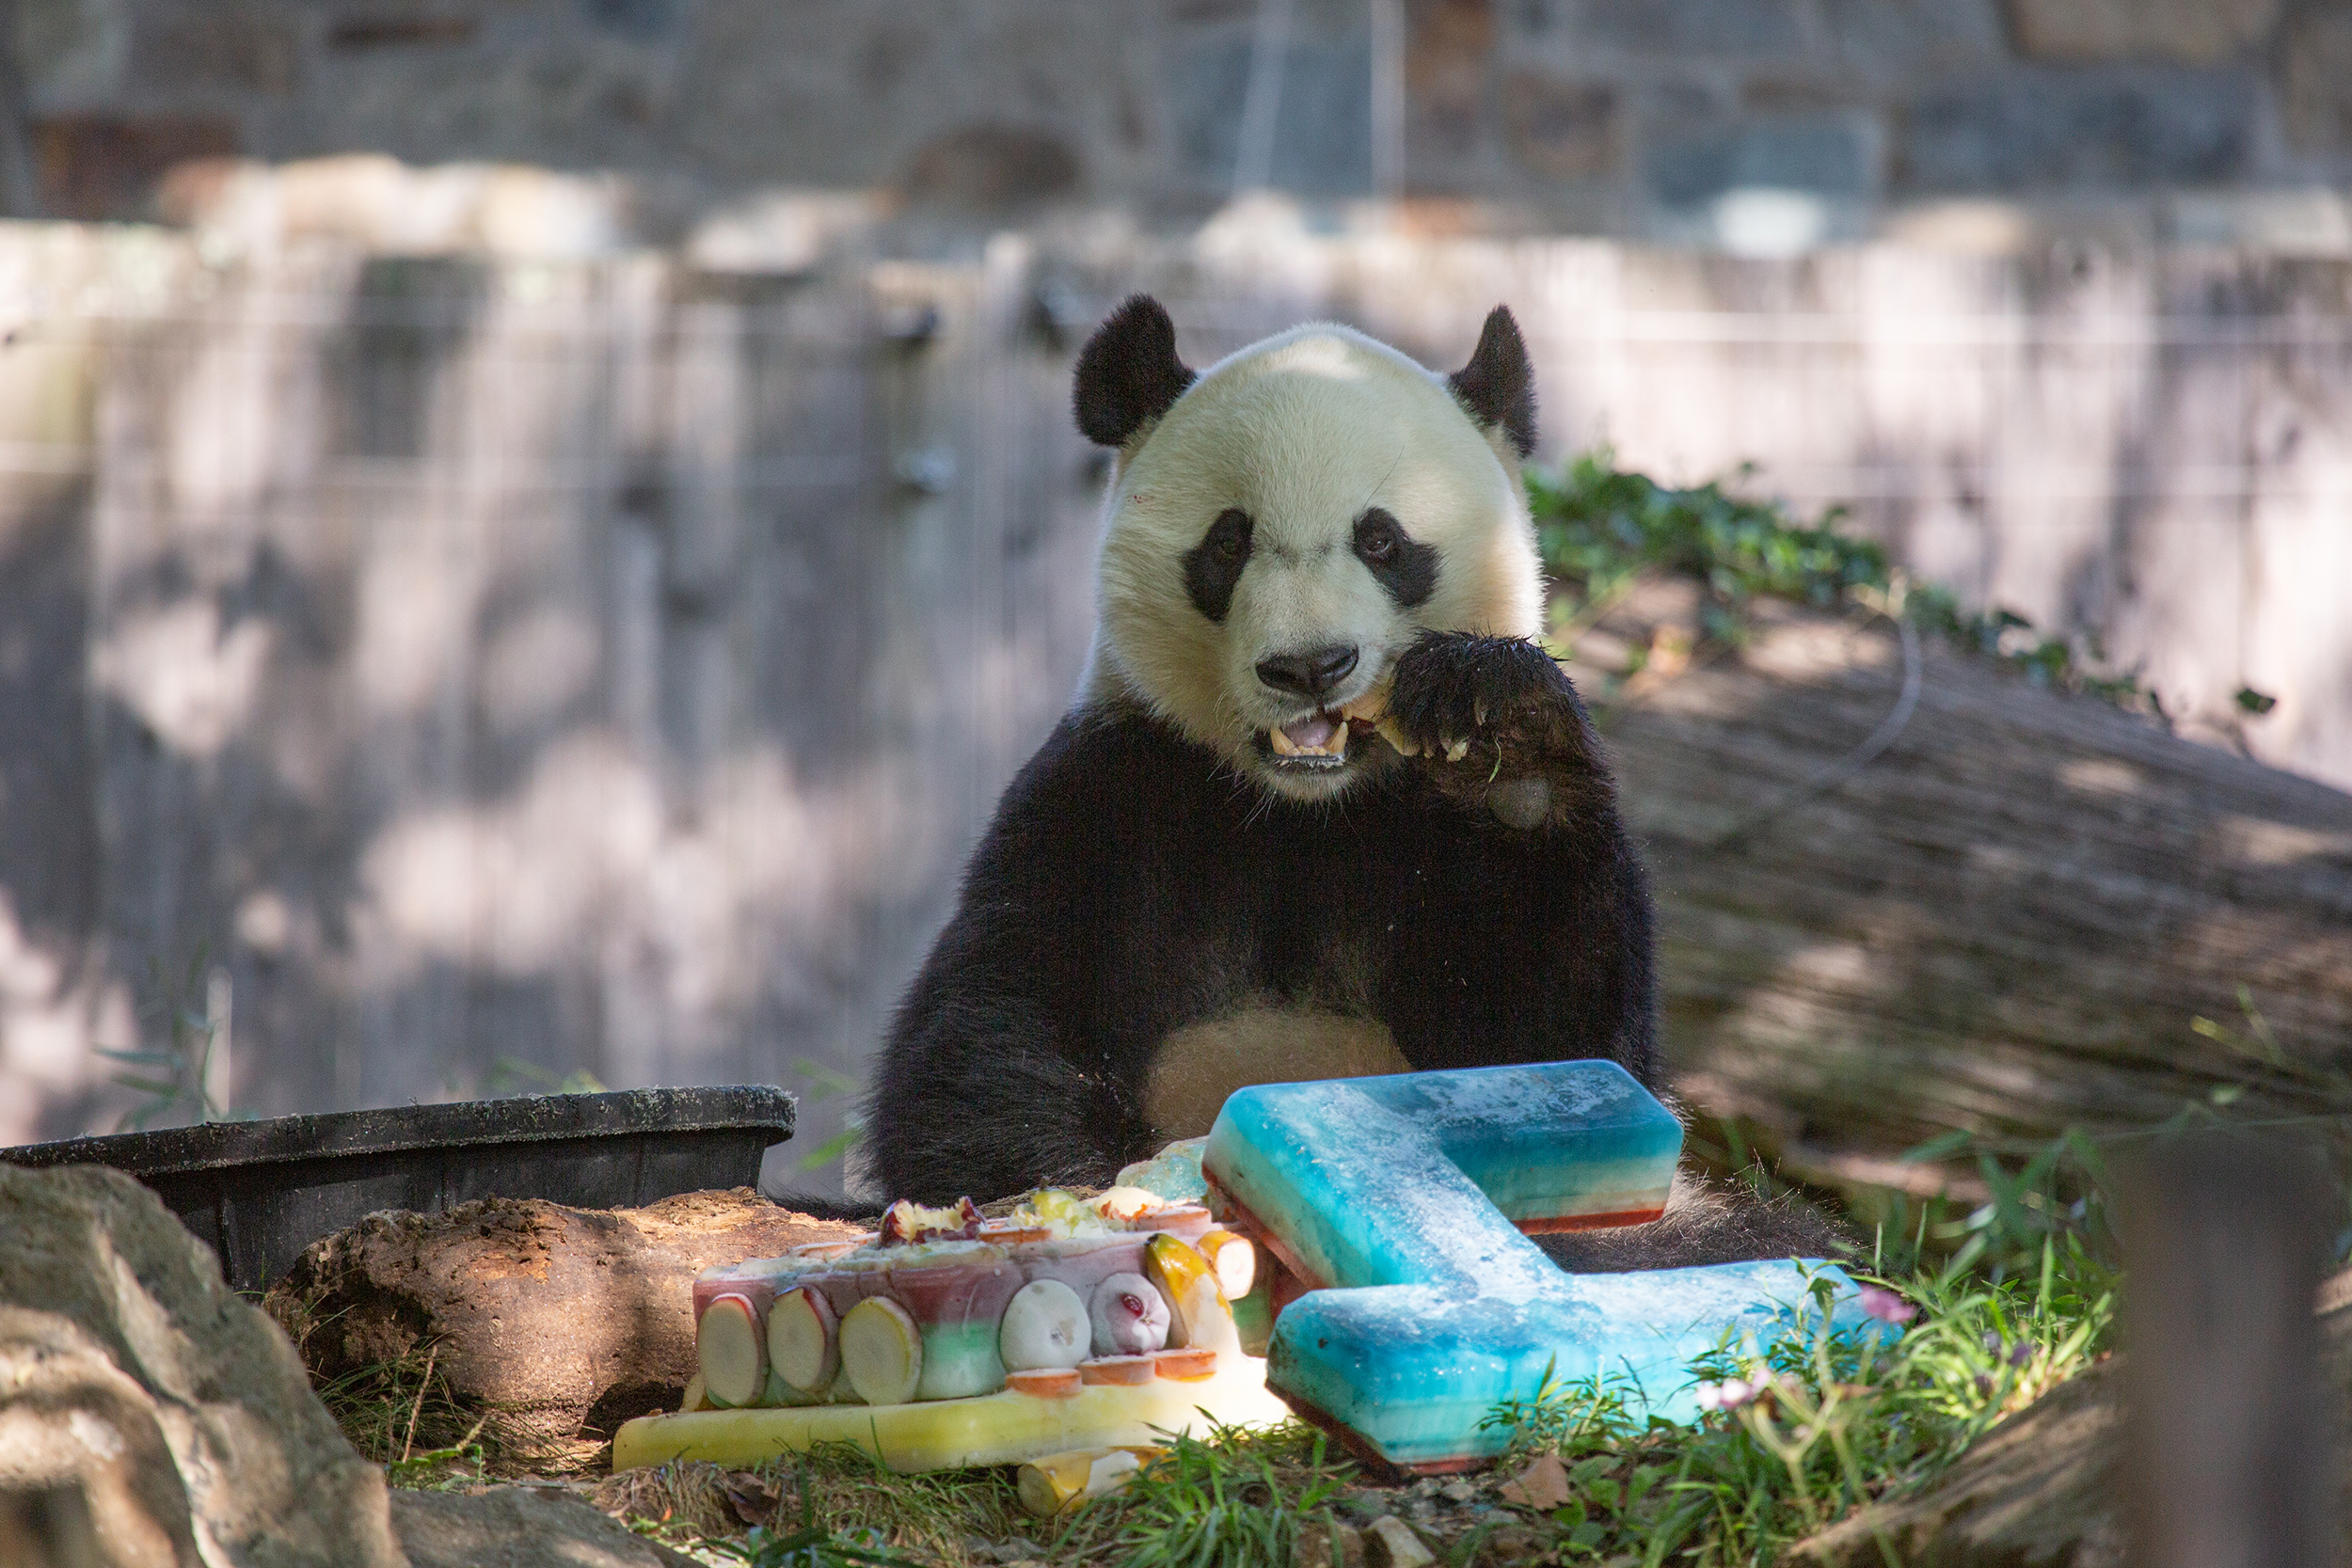 Giant Panda Bei Bei Celebrates His Fourth Birthday at the Smithsonian’s